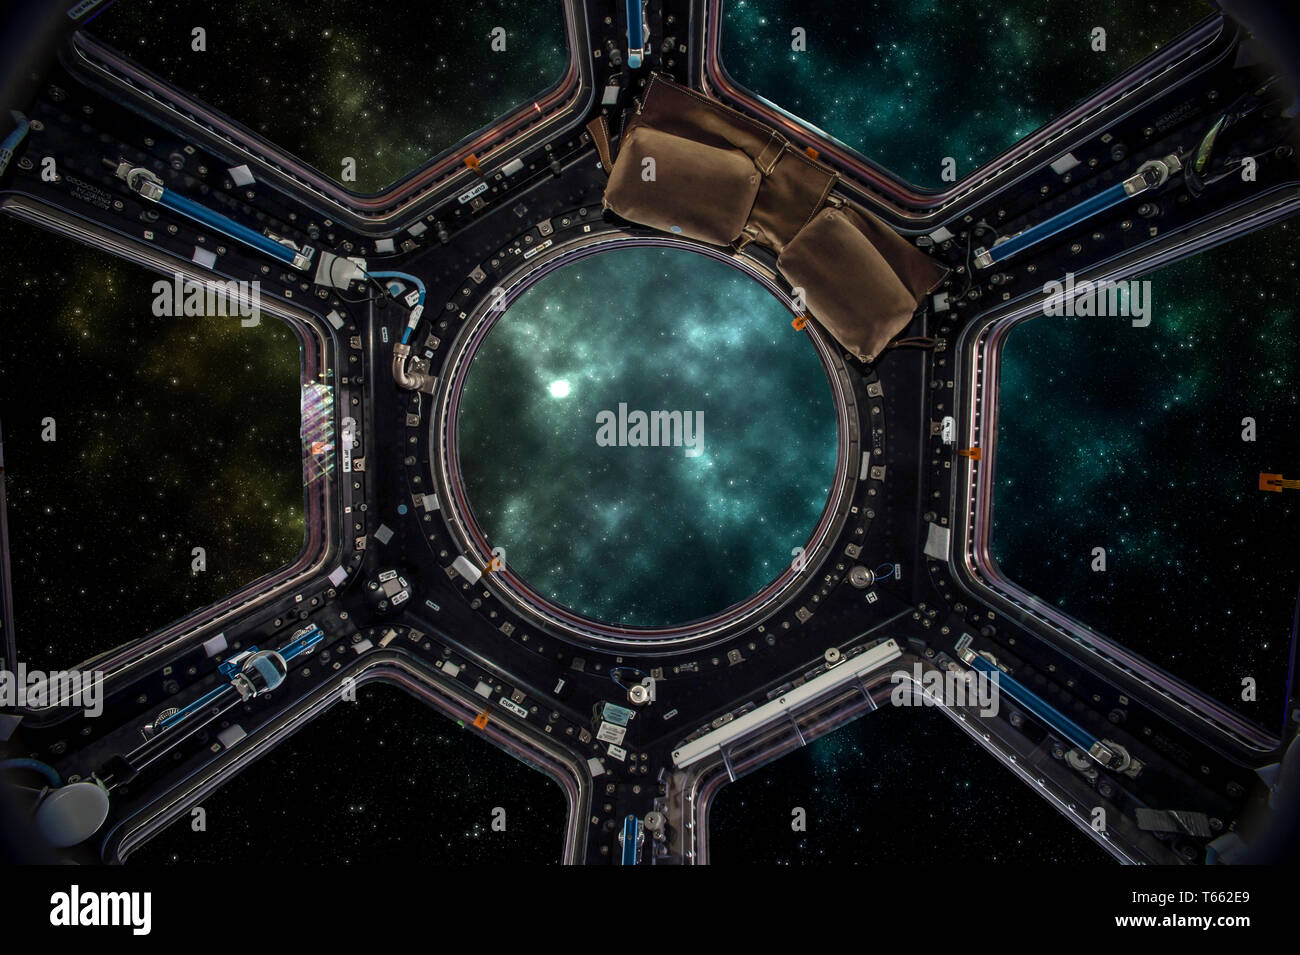 Raumfahrzeug in den Sternenhimmel bunte Raum. Elemente dieses Bild von der NASA eingerichtet. Stockfoto